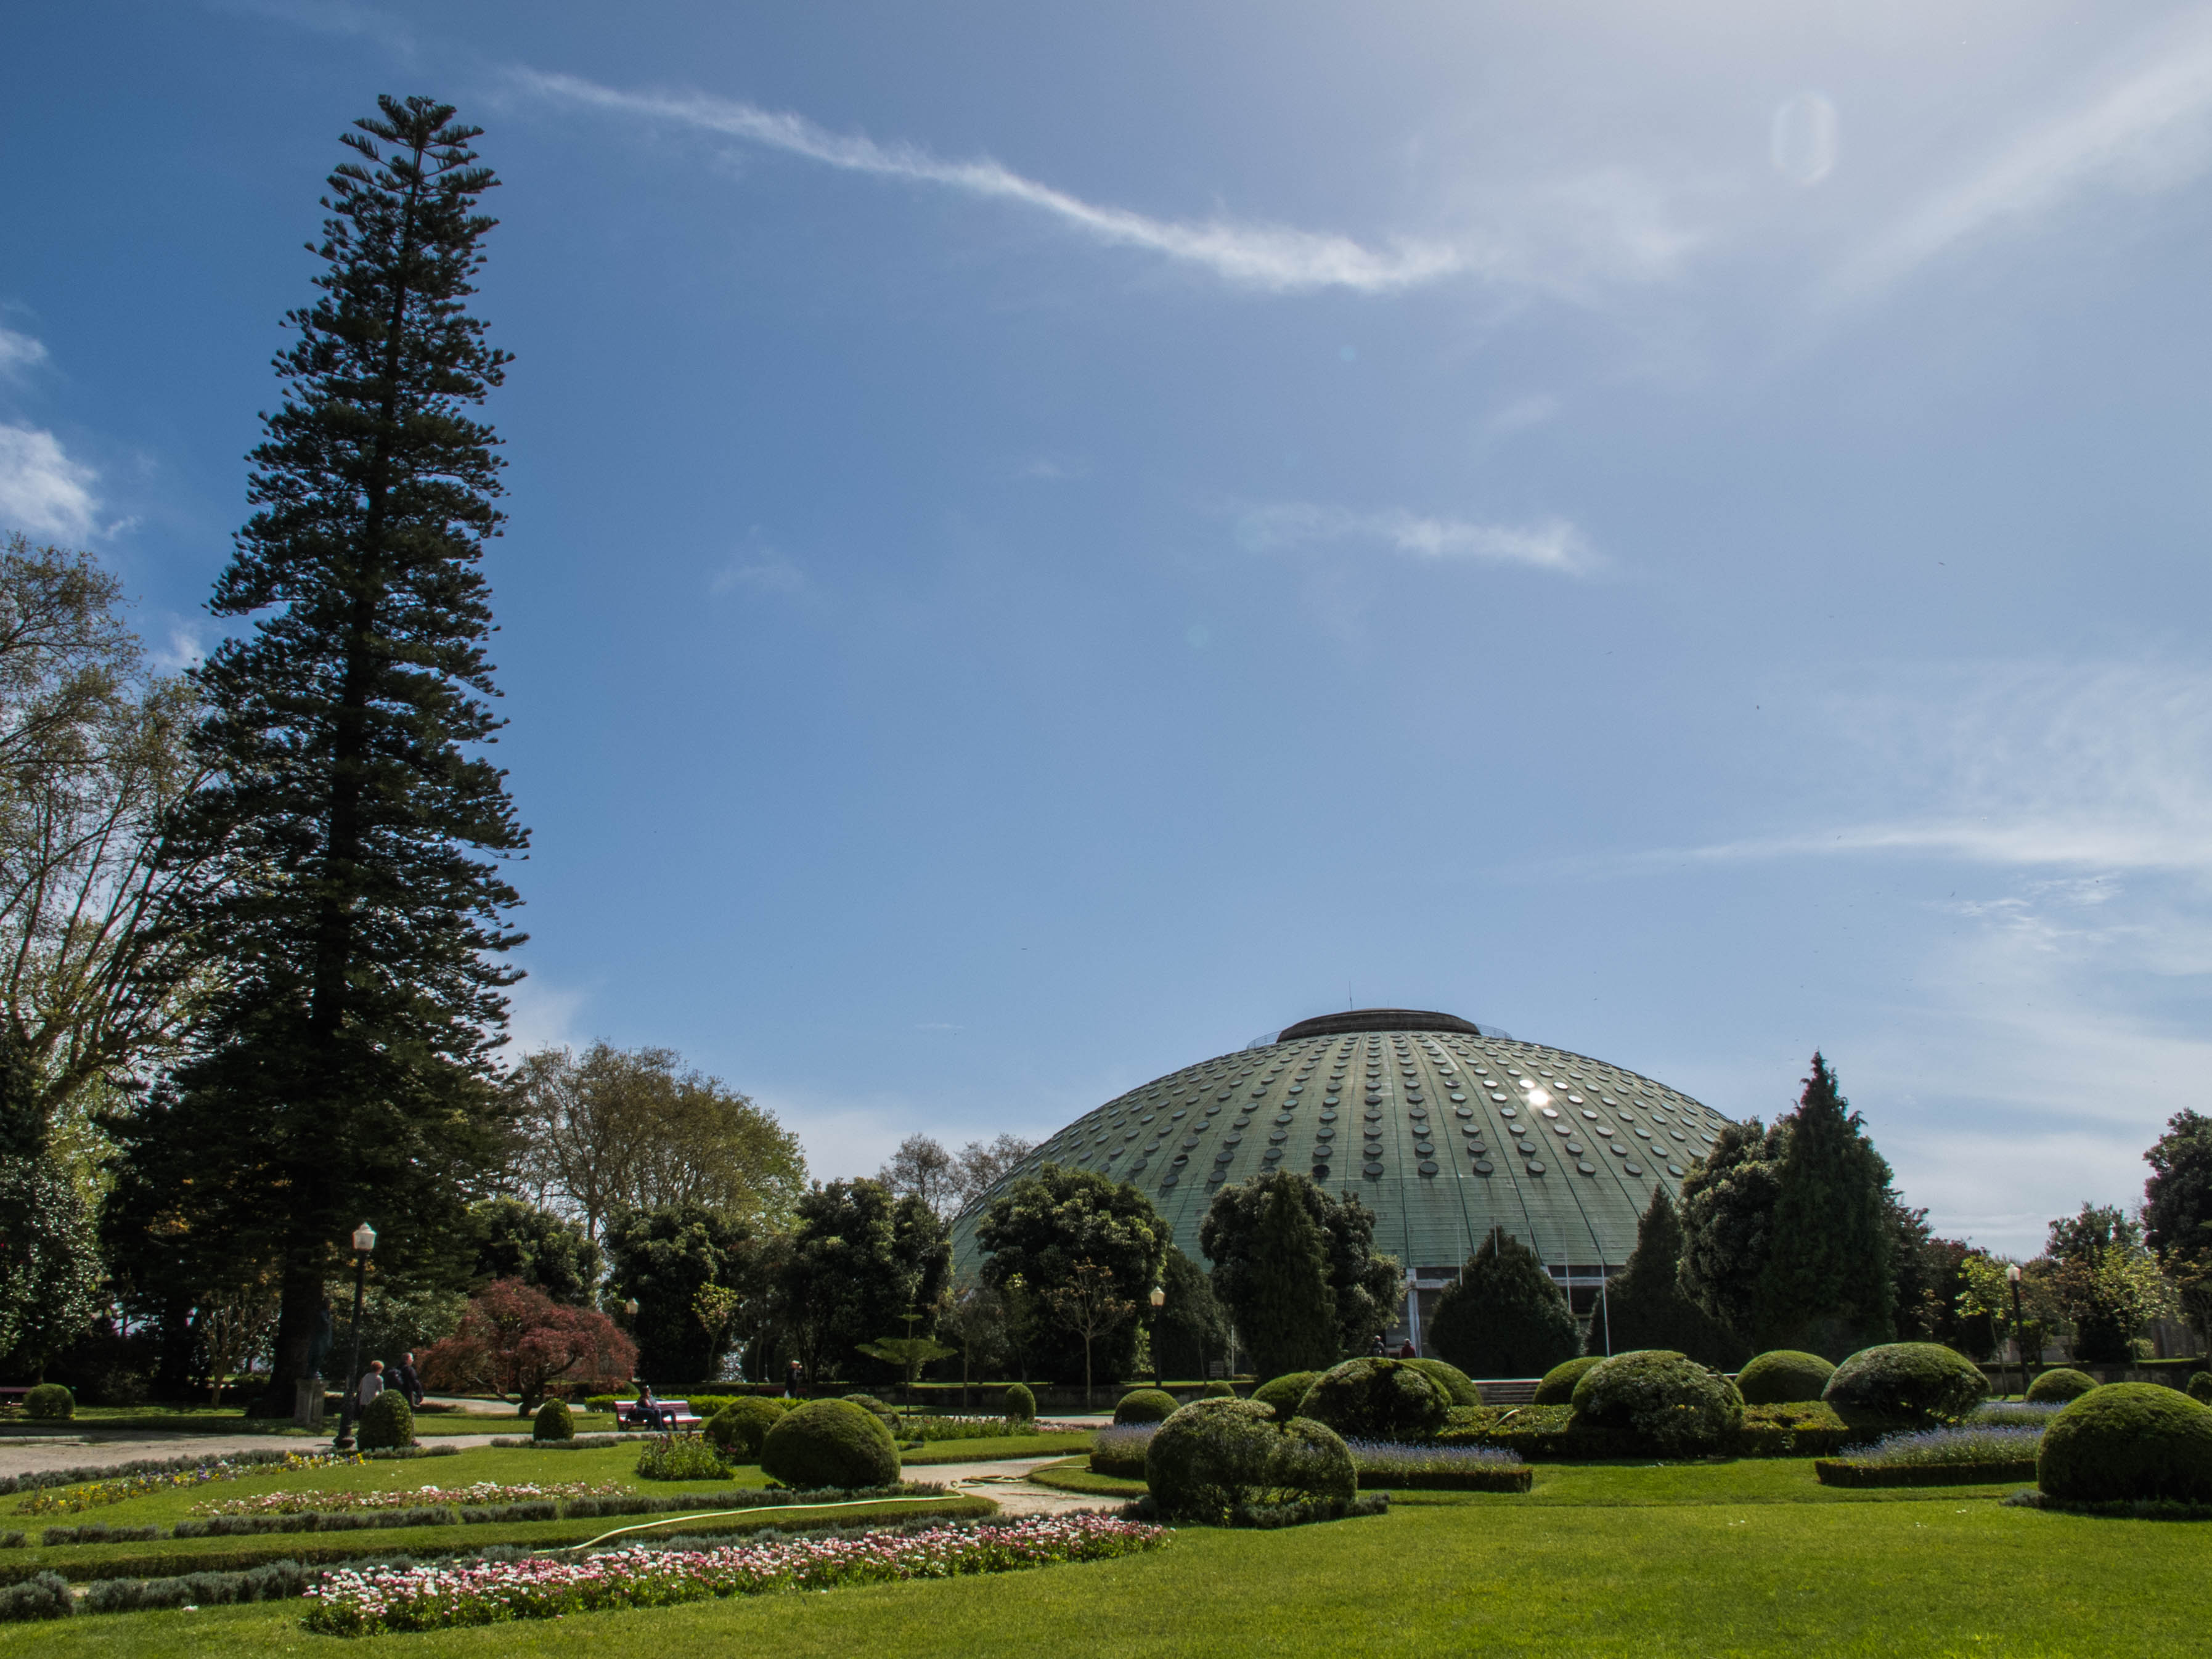 Jardins do Palácio de Cristal e o Palácio dos Desportos